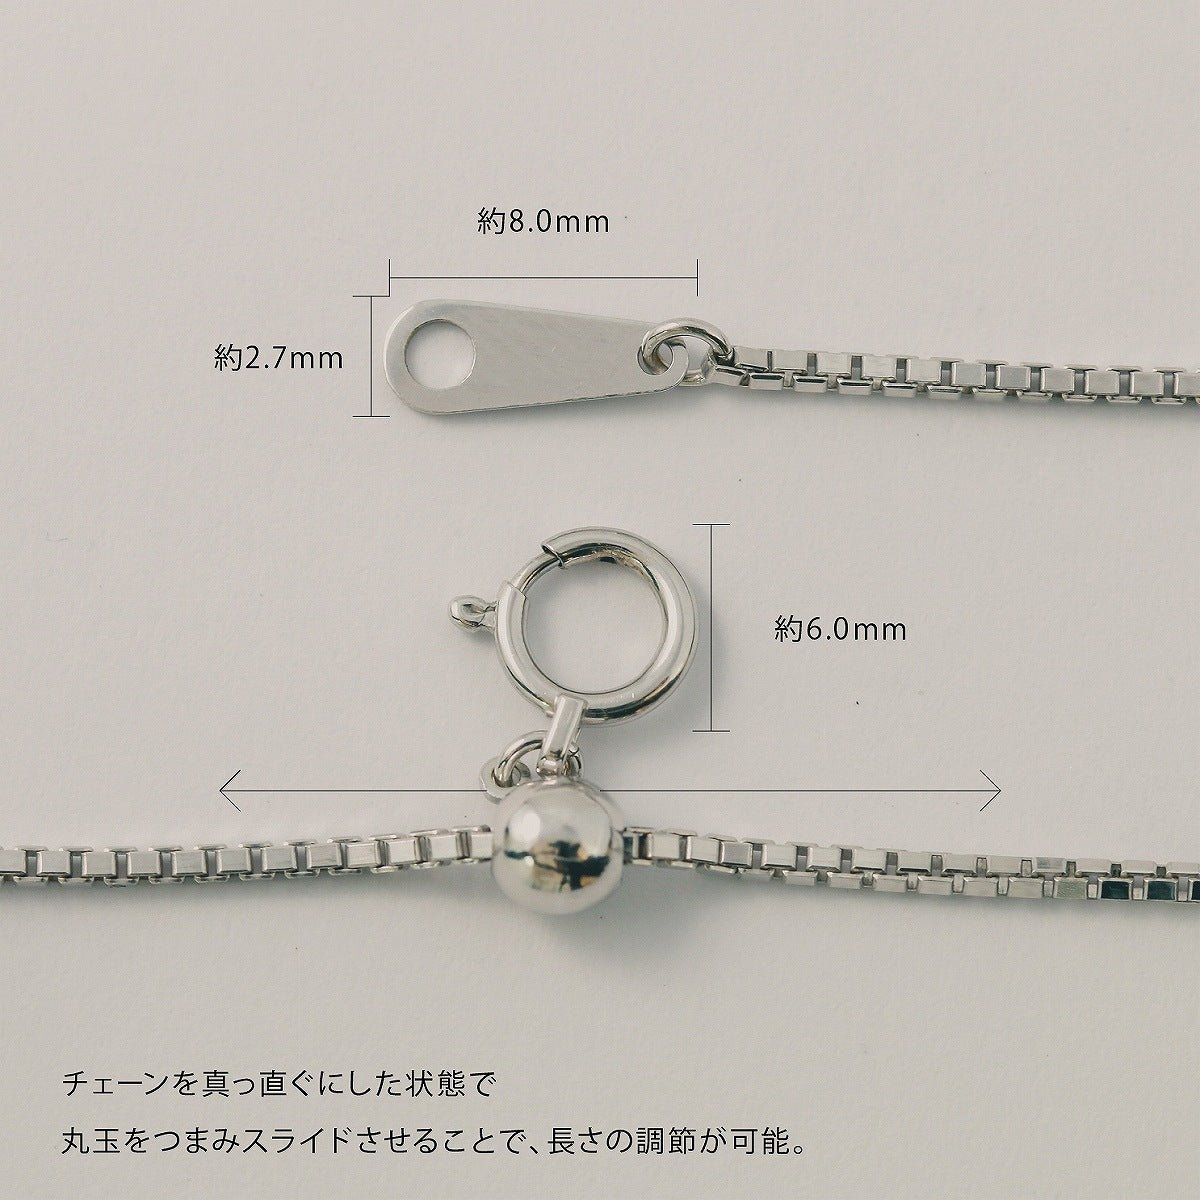 ネックレス チェーン スライドベネチアン 幅1.0mm 長さ45cm | chain-bene-slide-1.0